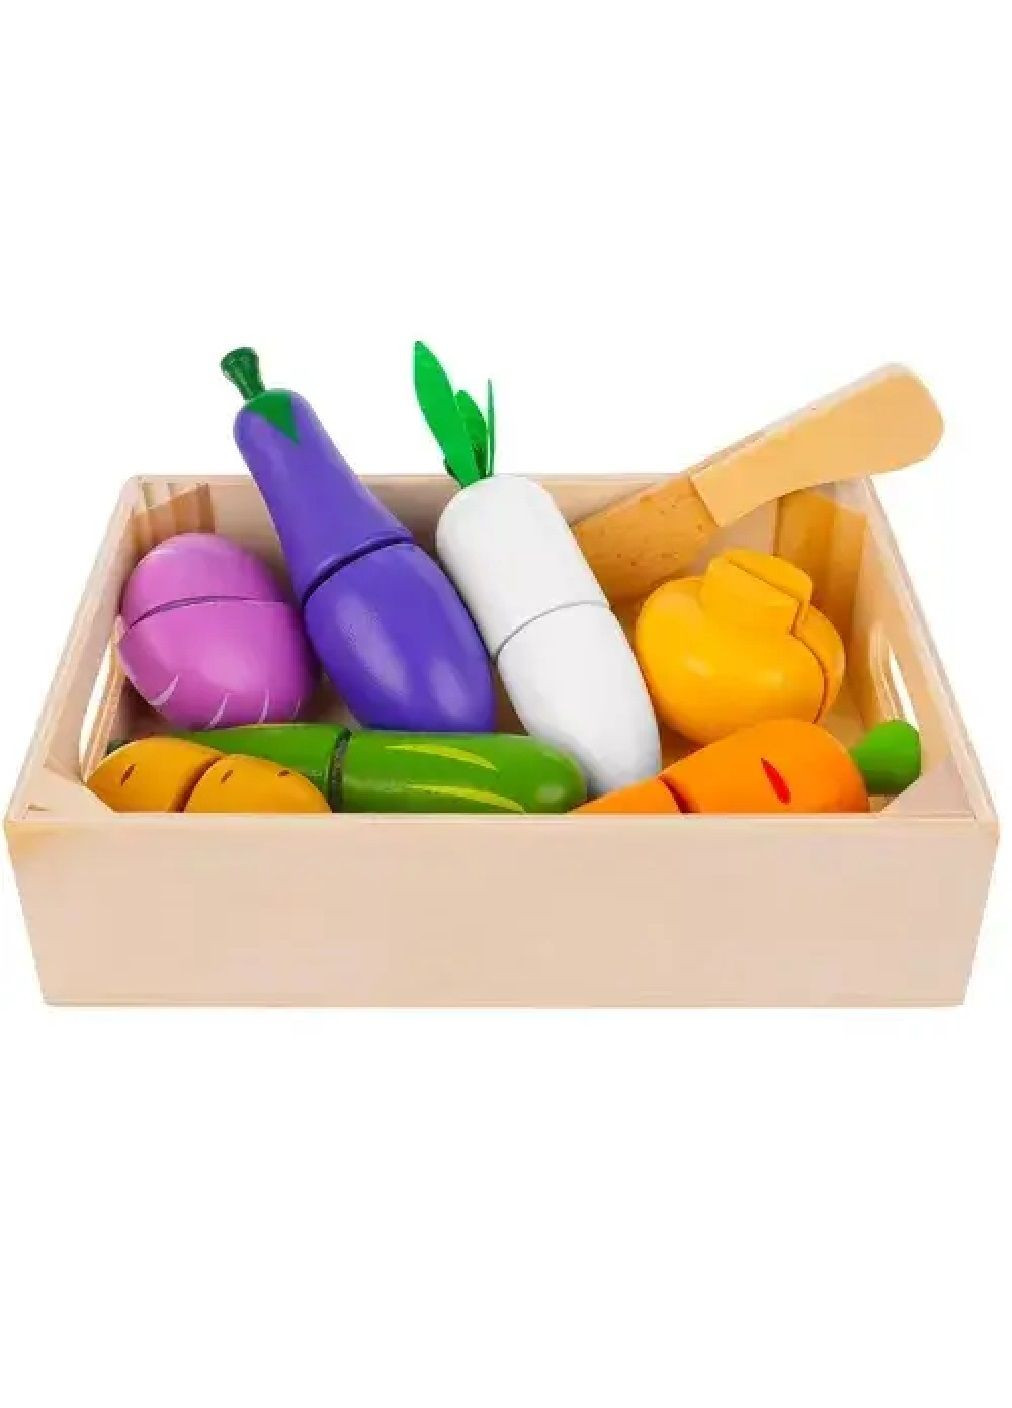 Детский деревянный комплект набор овощей фруктов на липучке для нарезания в ящике 9 элементов 18х12,5х4,4 см (476857-Prob) Unbranded (292111613)